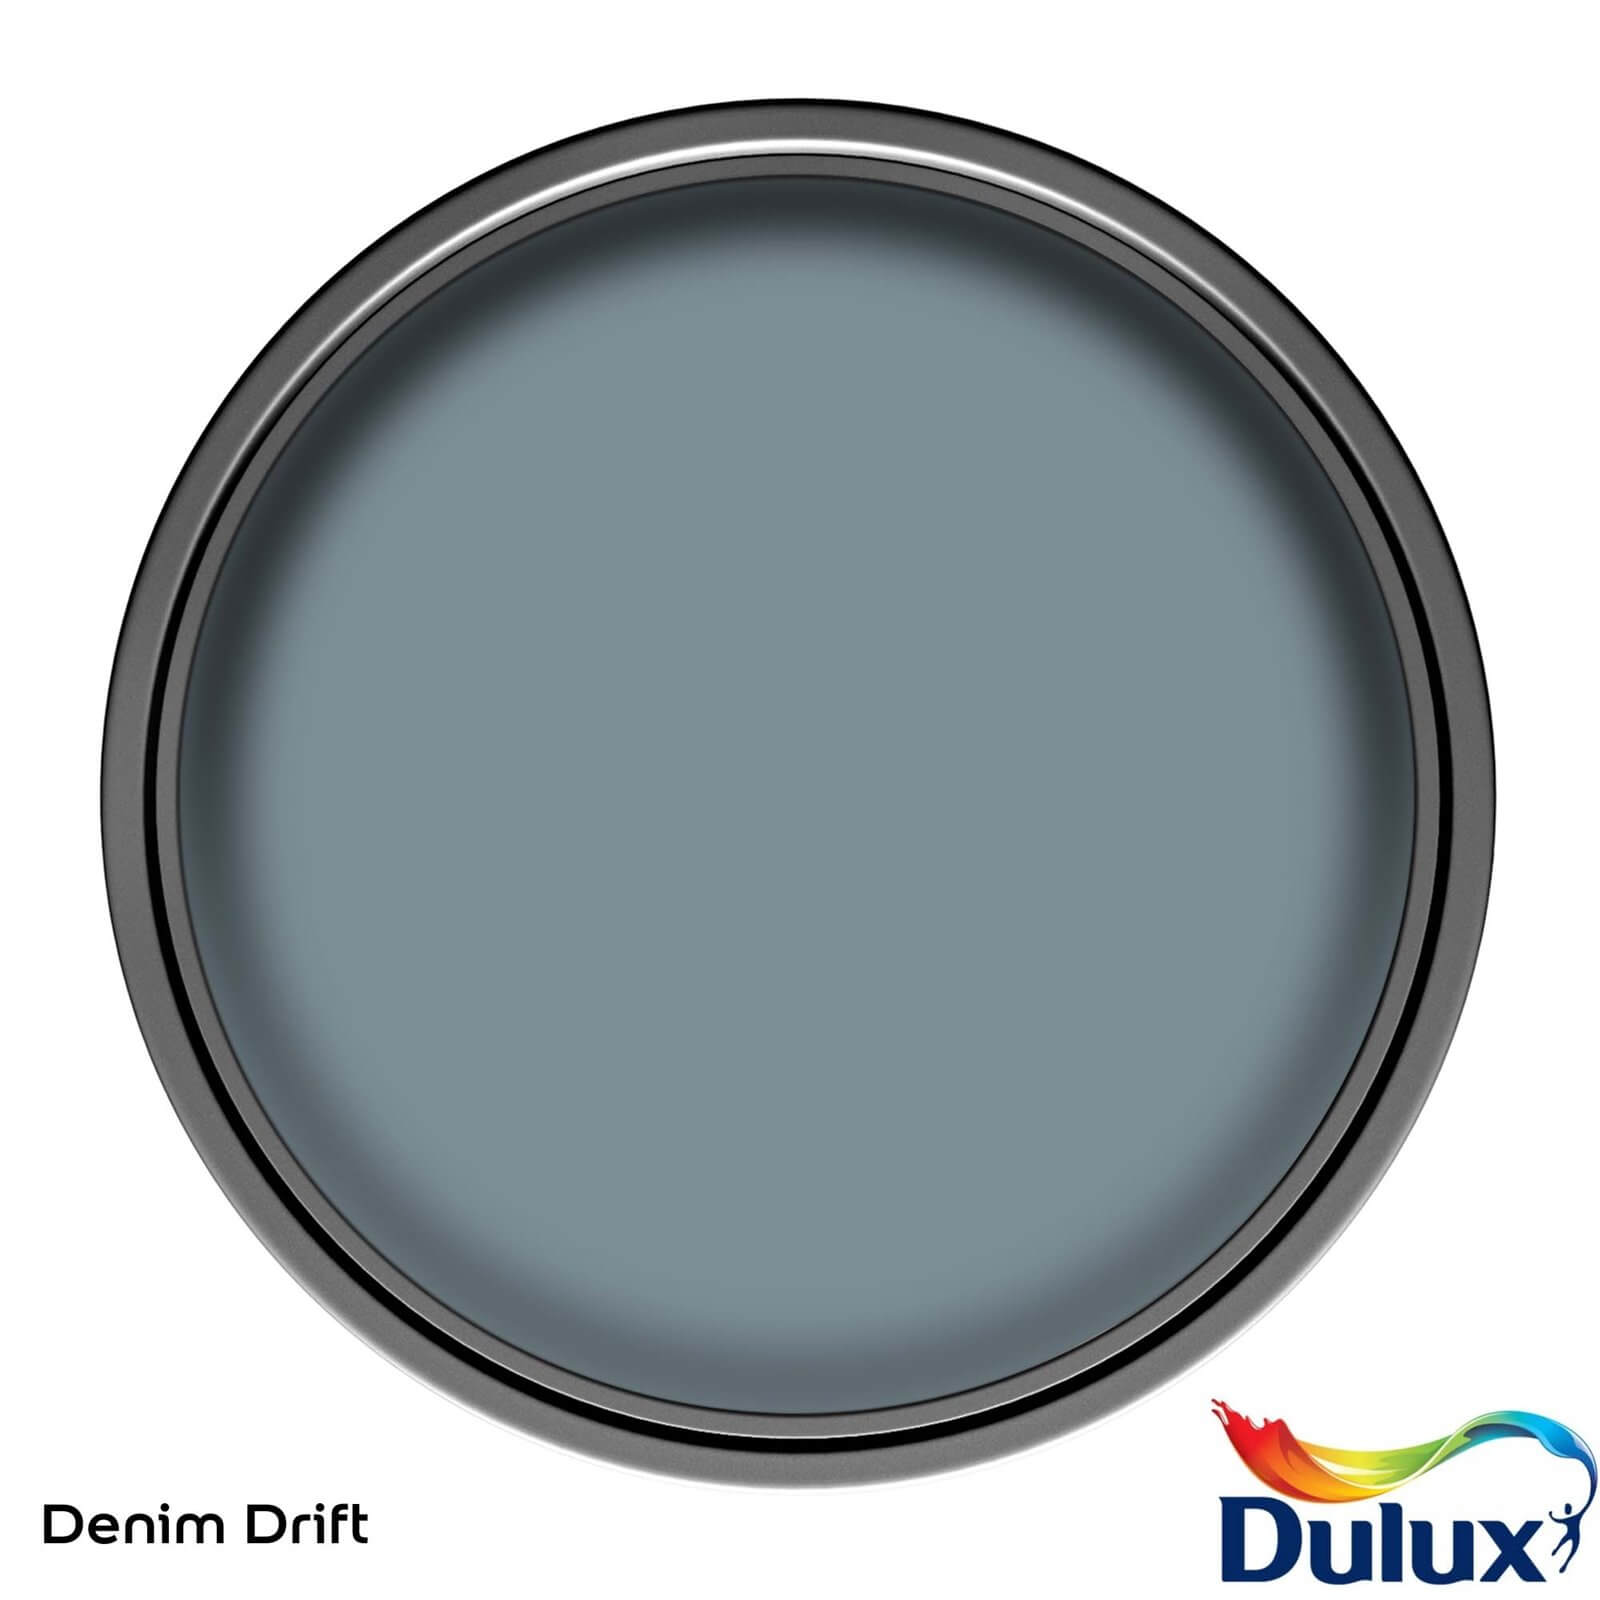 Dulux Easycare Washable & Tough Matt Paint Denim Drift - 2.5L